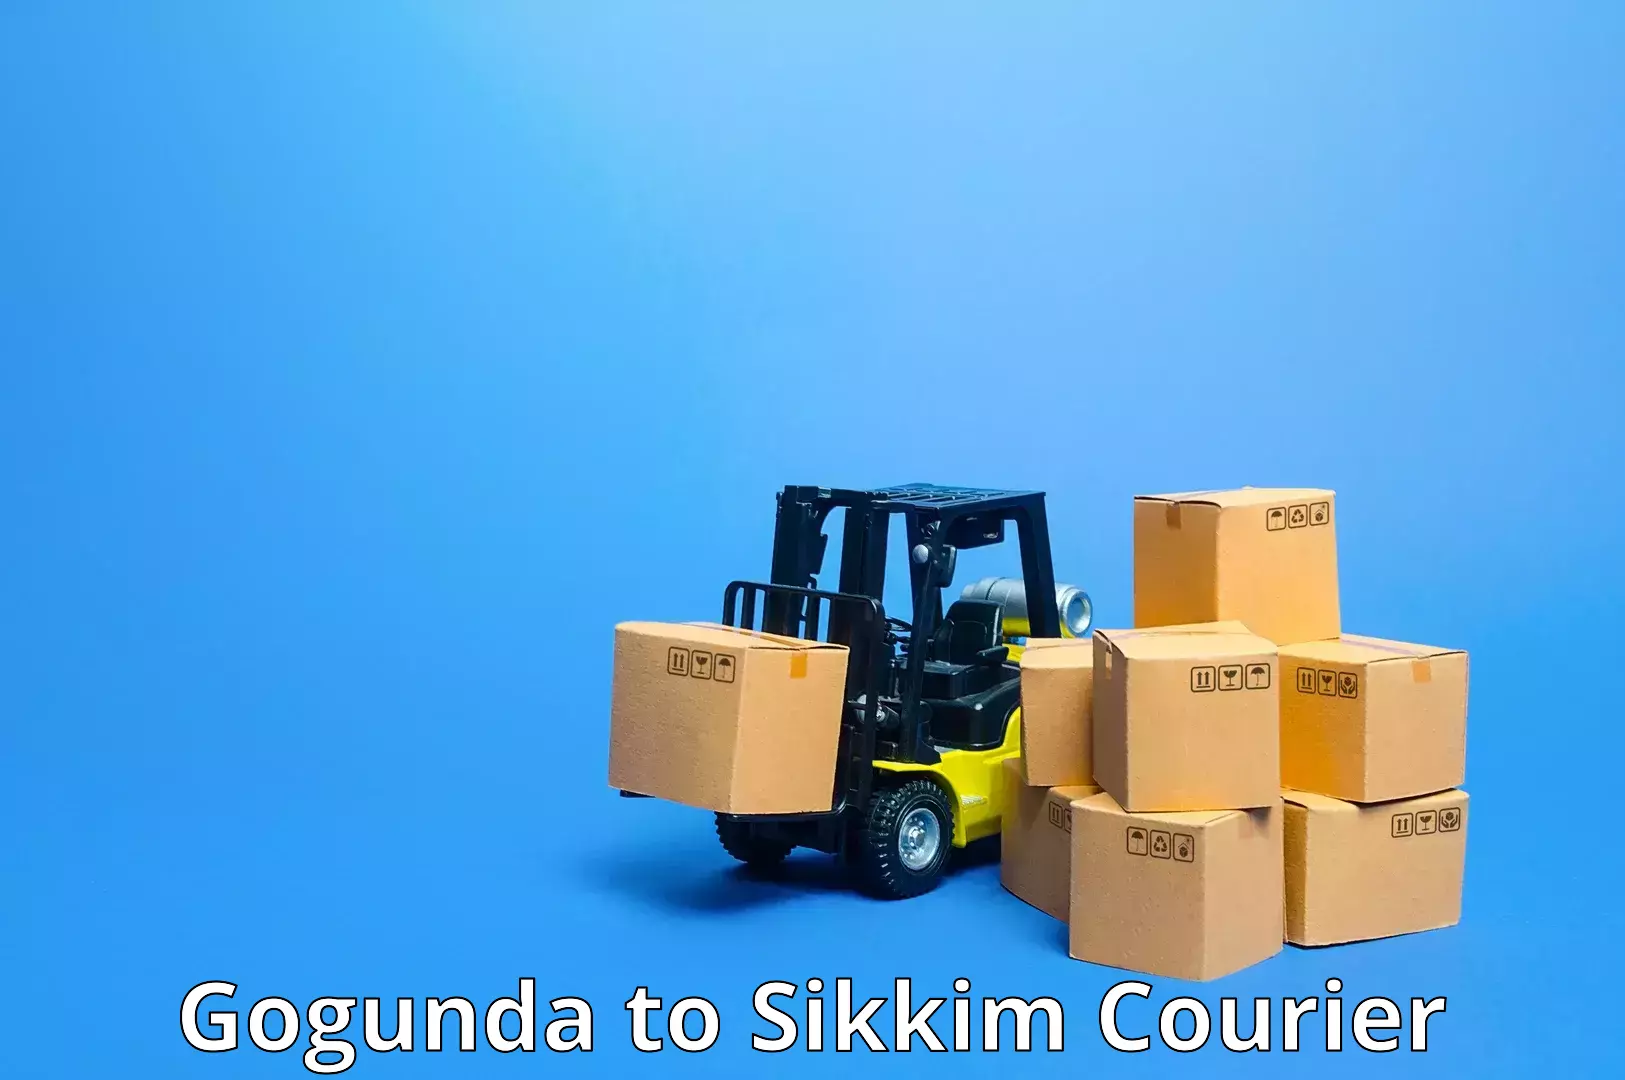 Flexible parcel services Gogunda to Rangpo